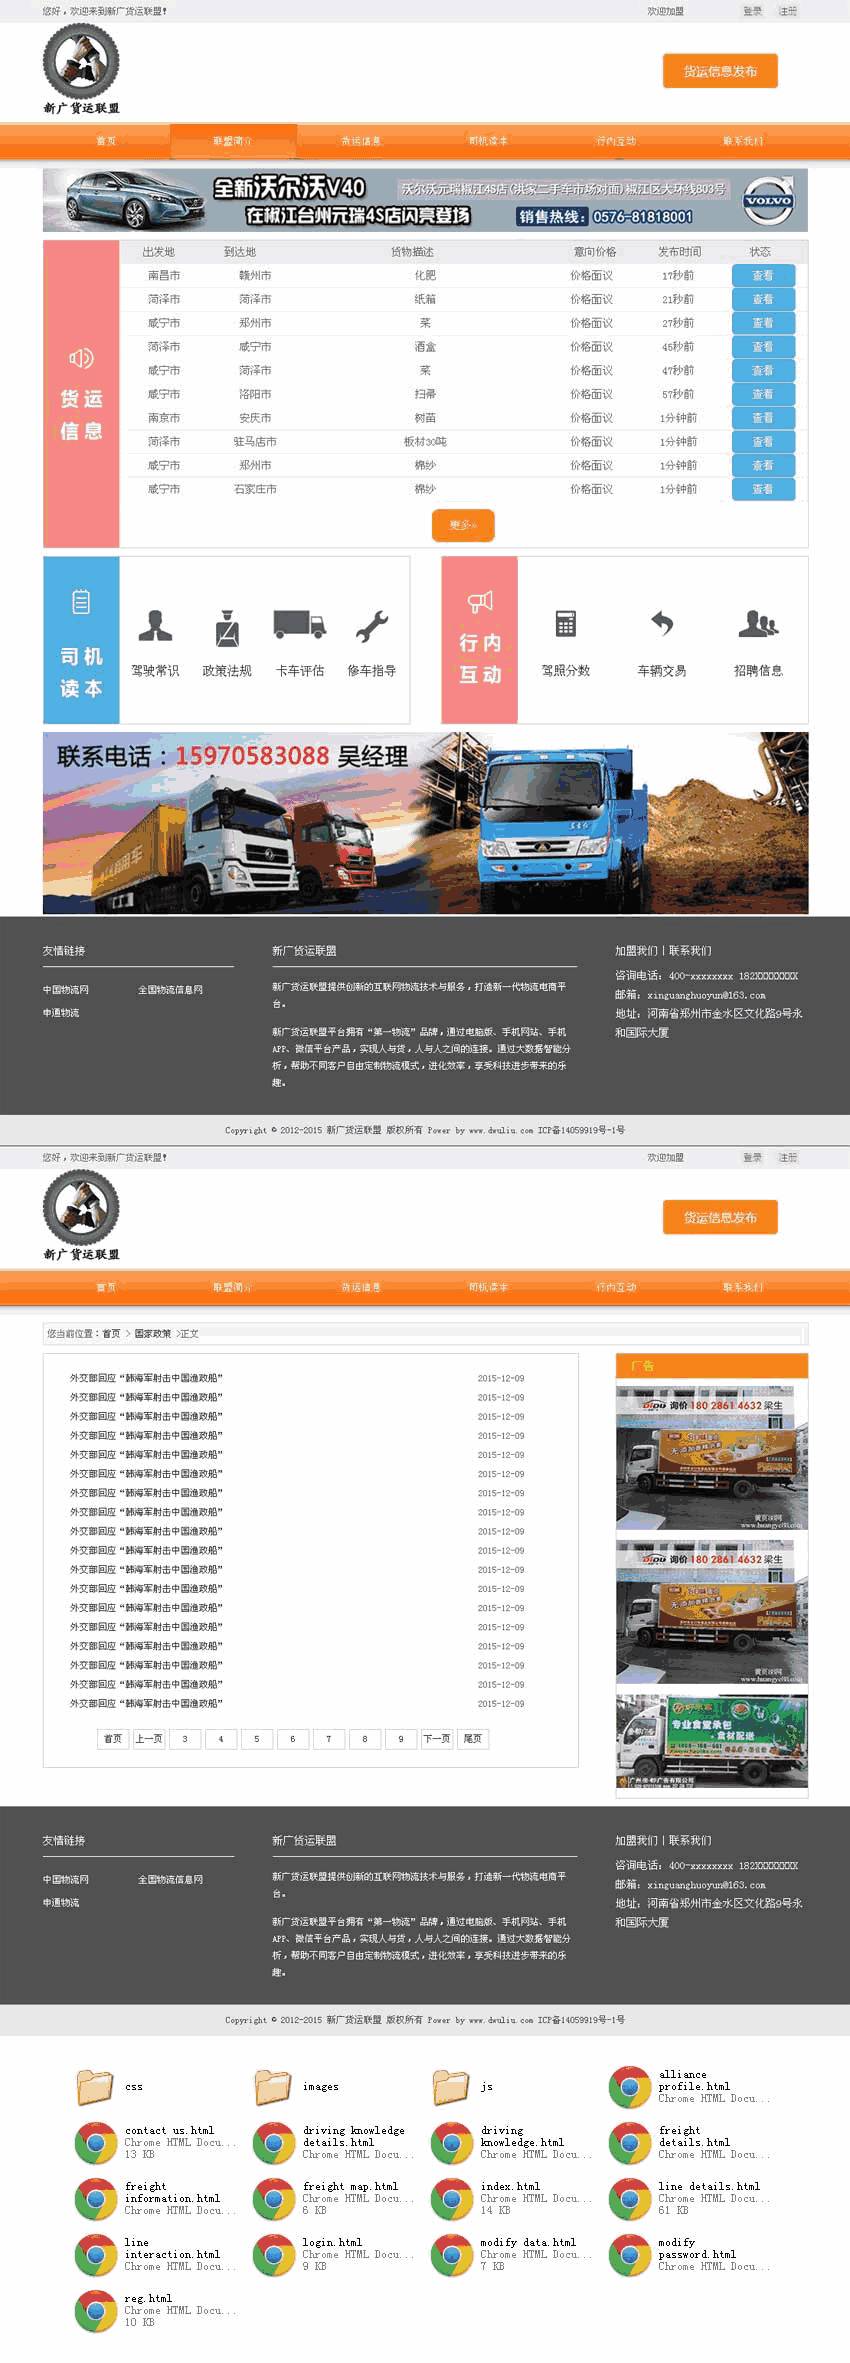 橙色新广货运联盟物流信息平台网站WordPress模板含手机站演示图